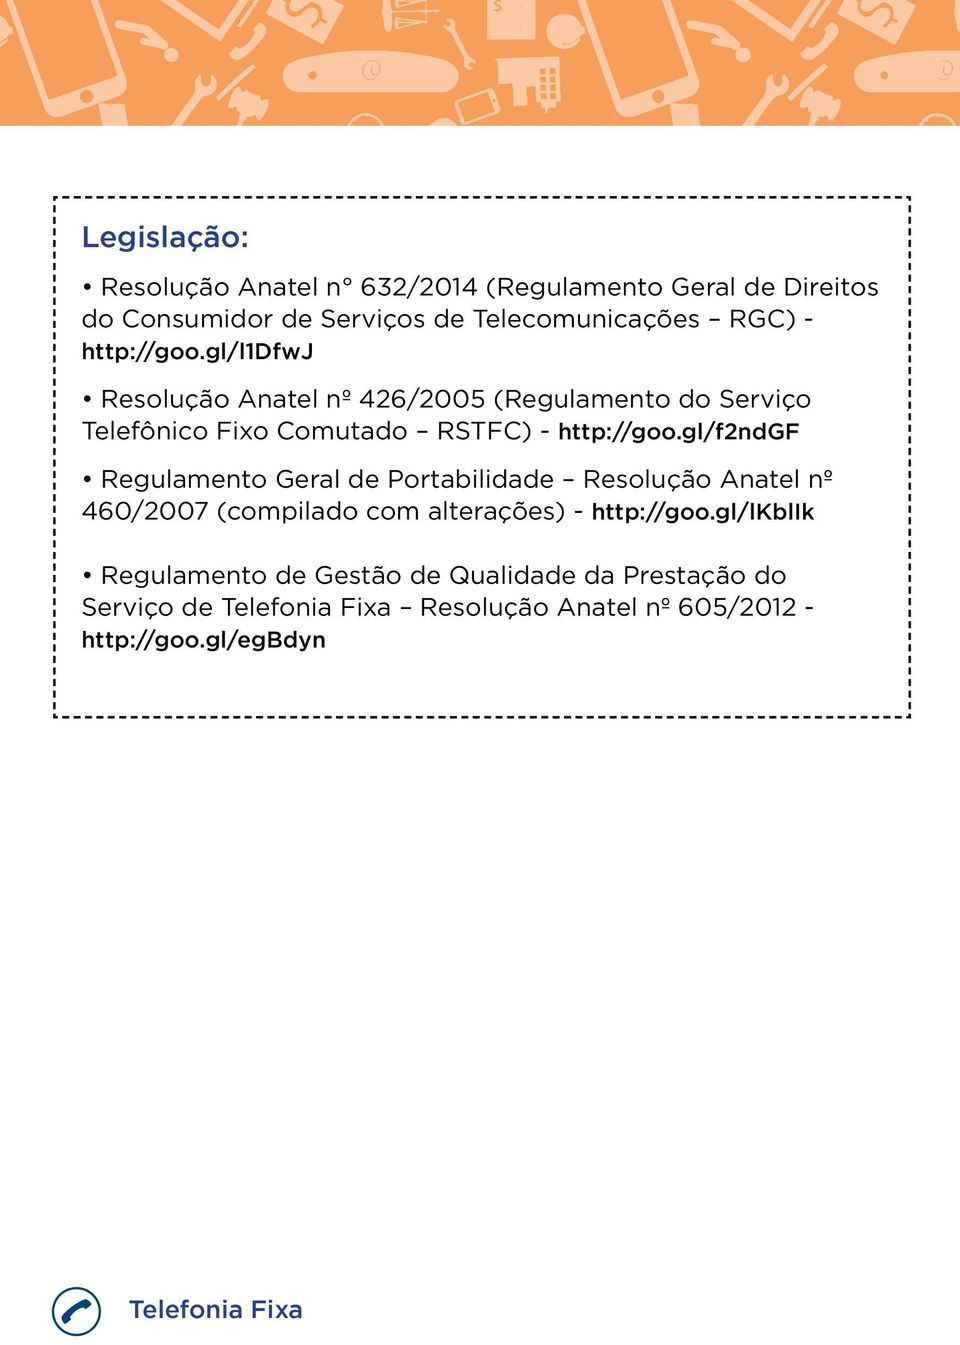 gl/f2ndgf Regulamento Geral de Portabilidade Resolução Anatel nº 460/2007 (compilado com alterações) - http://goo.